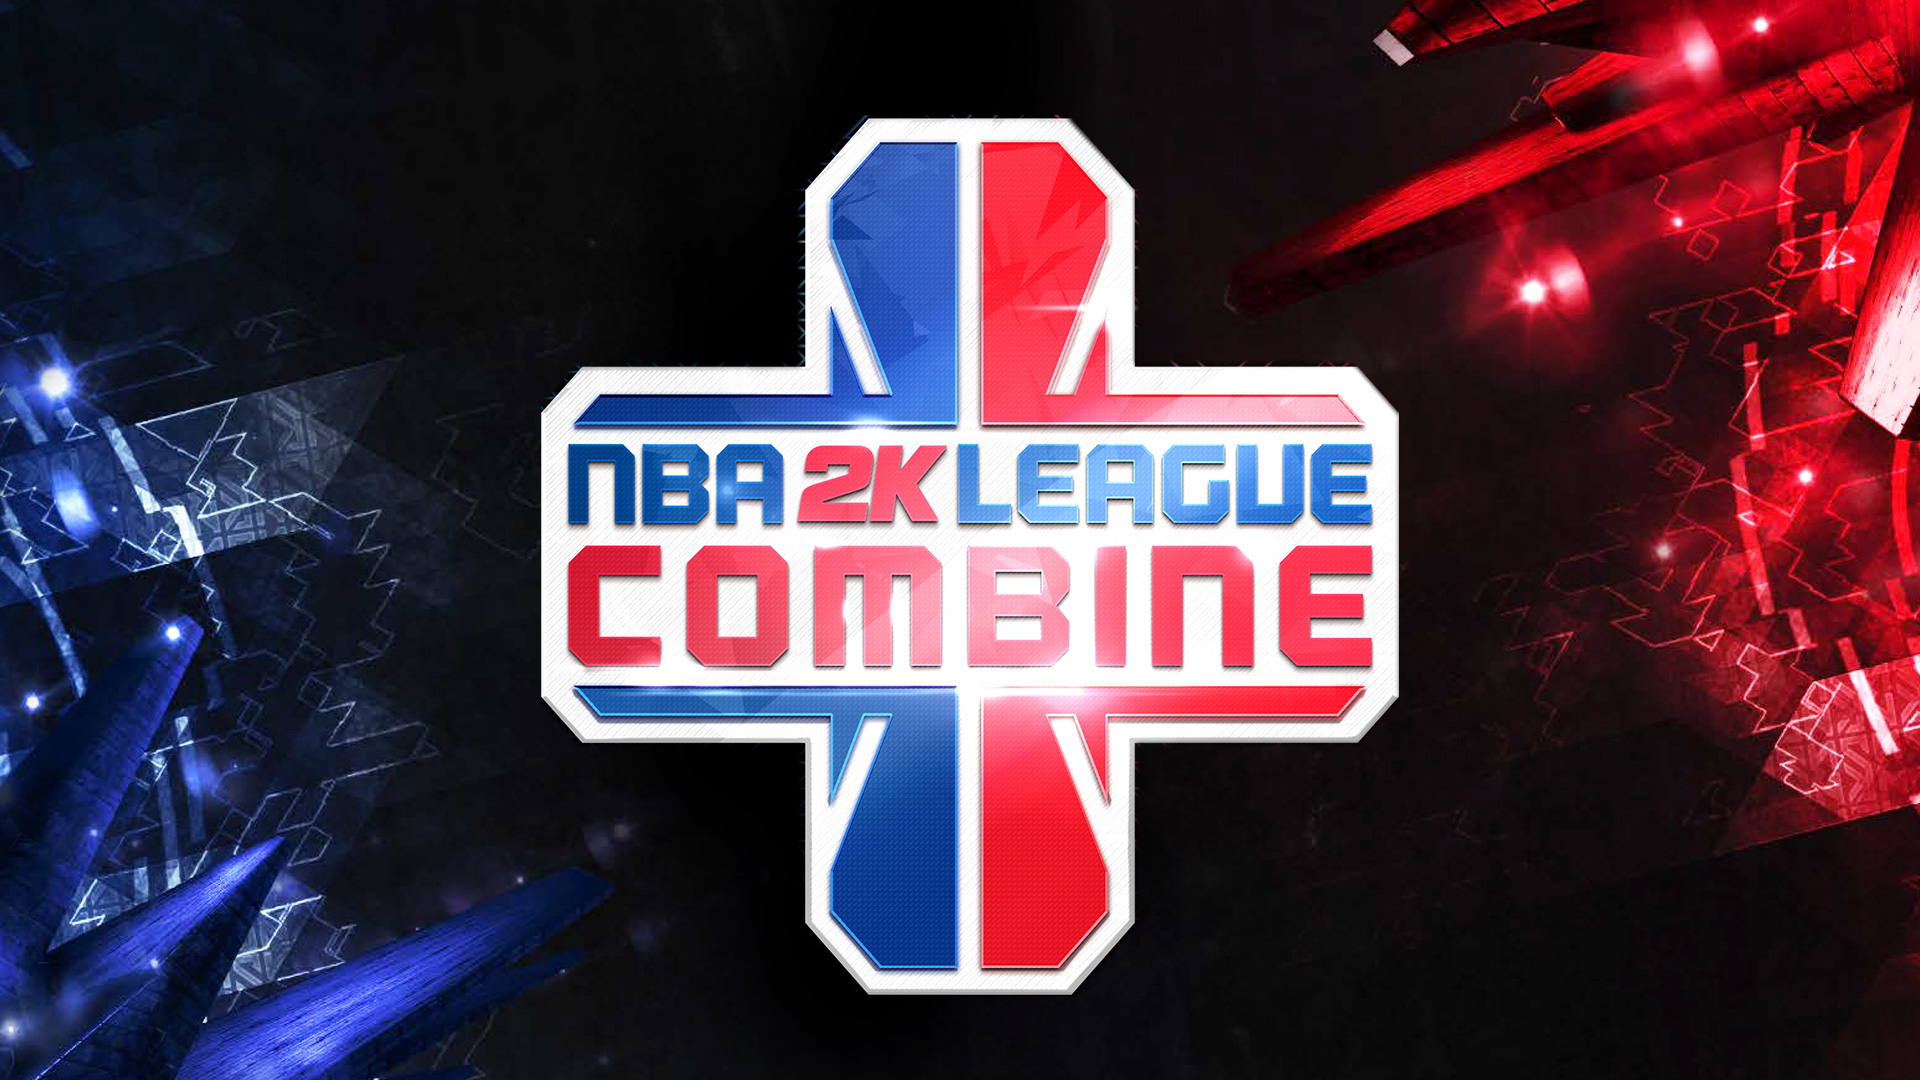 Más detalles acerca de la NBA 2K League Combine TecnoGaming